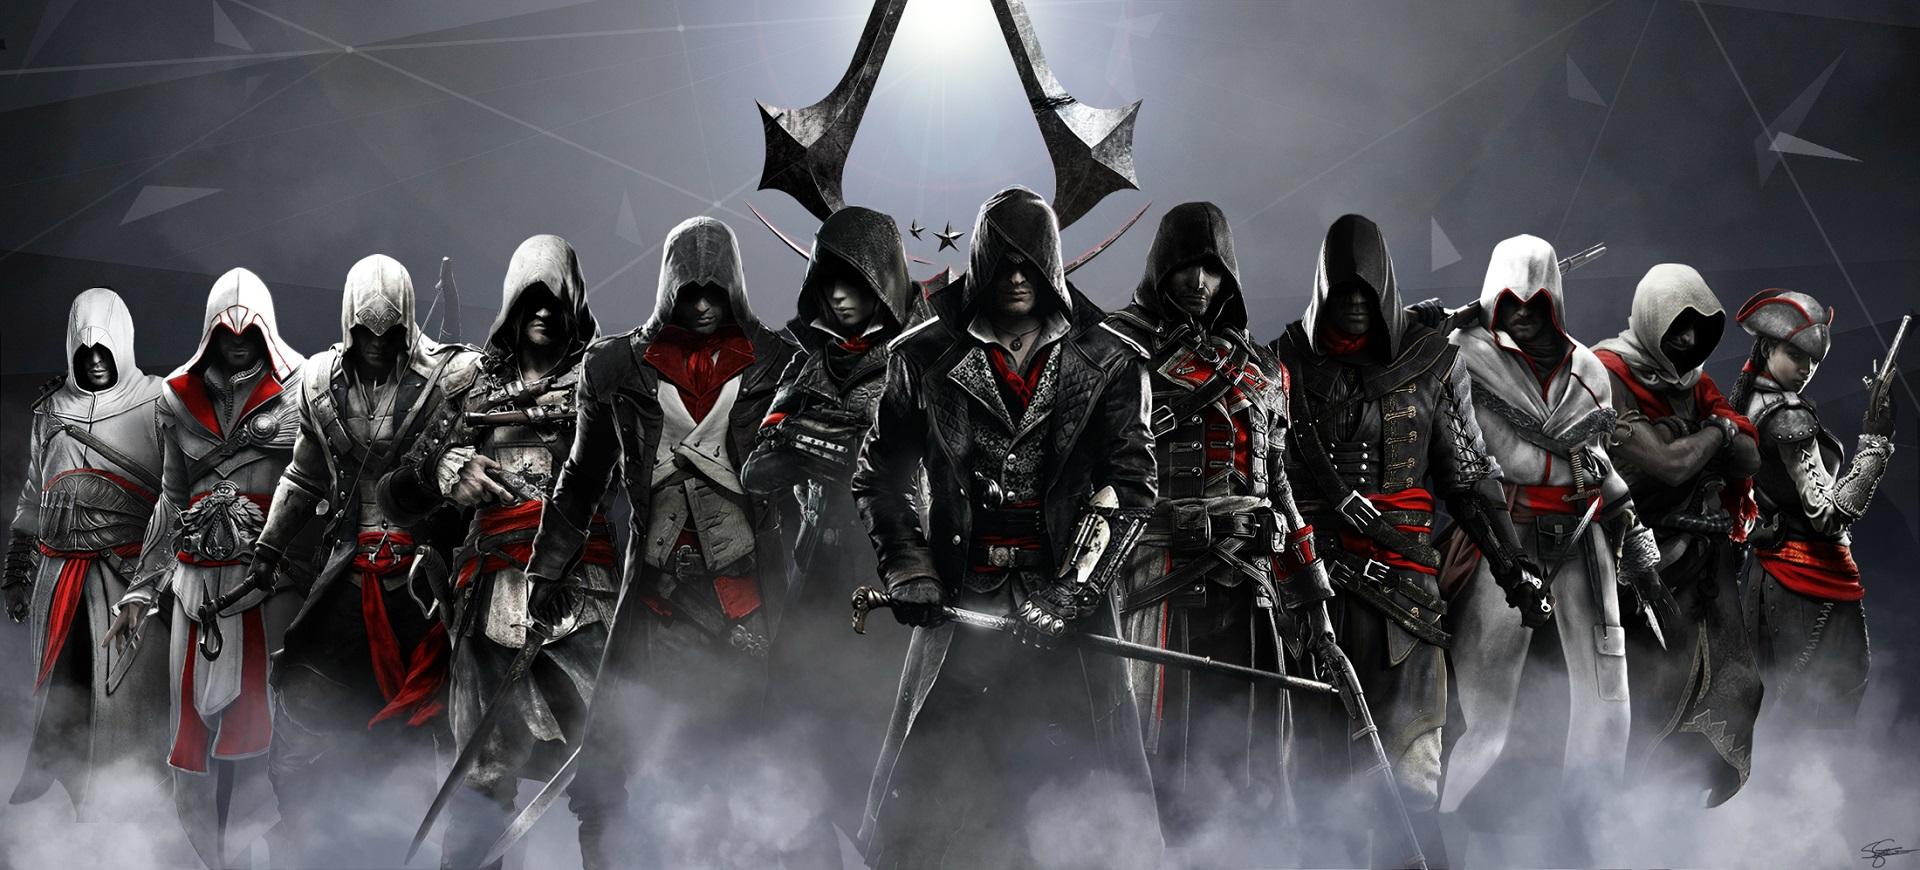 Assassin’s Creed - Kiến thức nhập môn “Hội sát thủ” (Kỳ IIII)